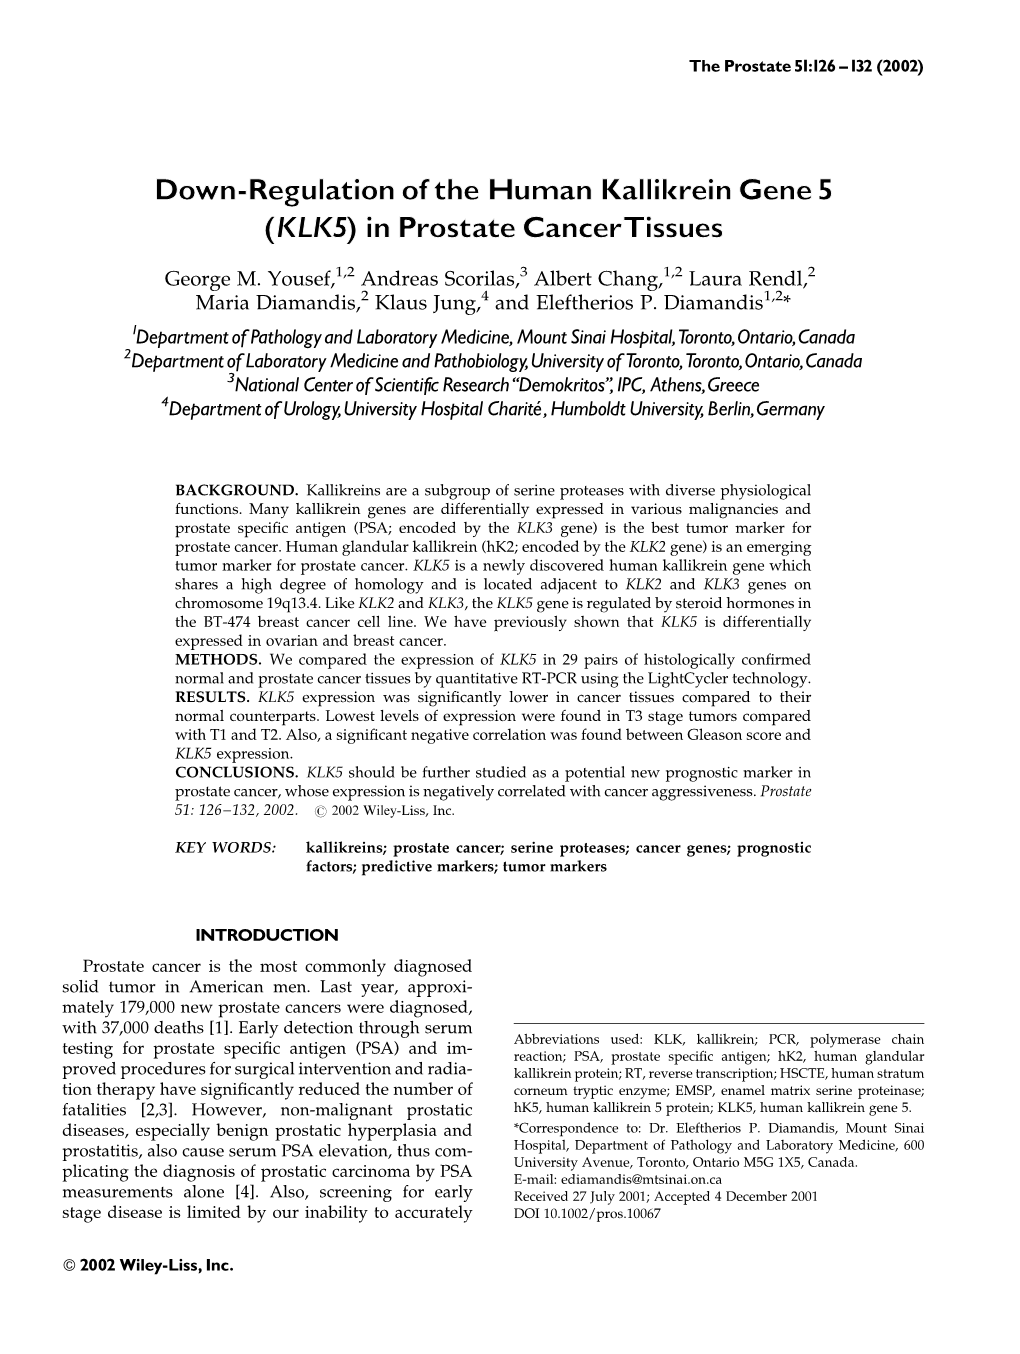 Down-Regulation of the Human Kallikrein Gene 5 (KLK5) in Prostate Cancertissues